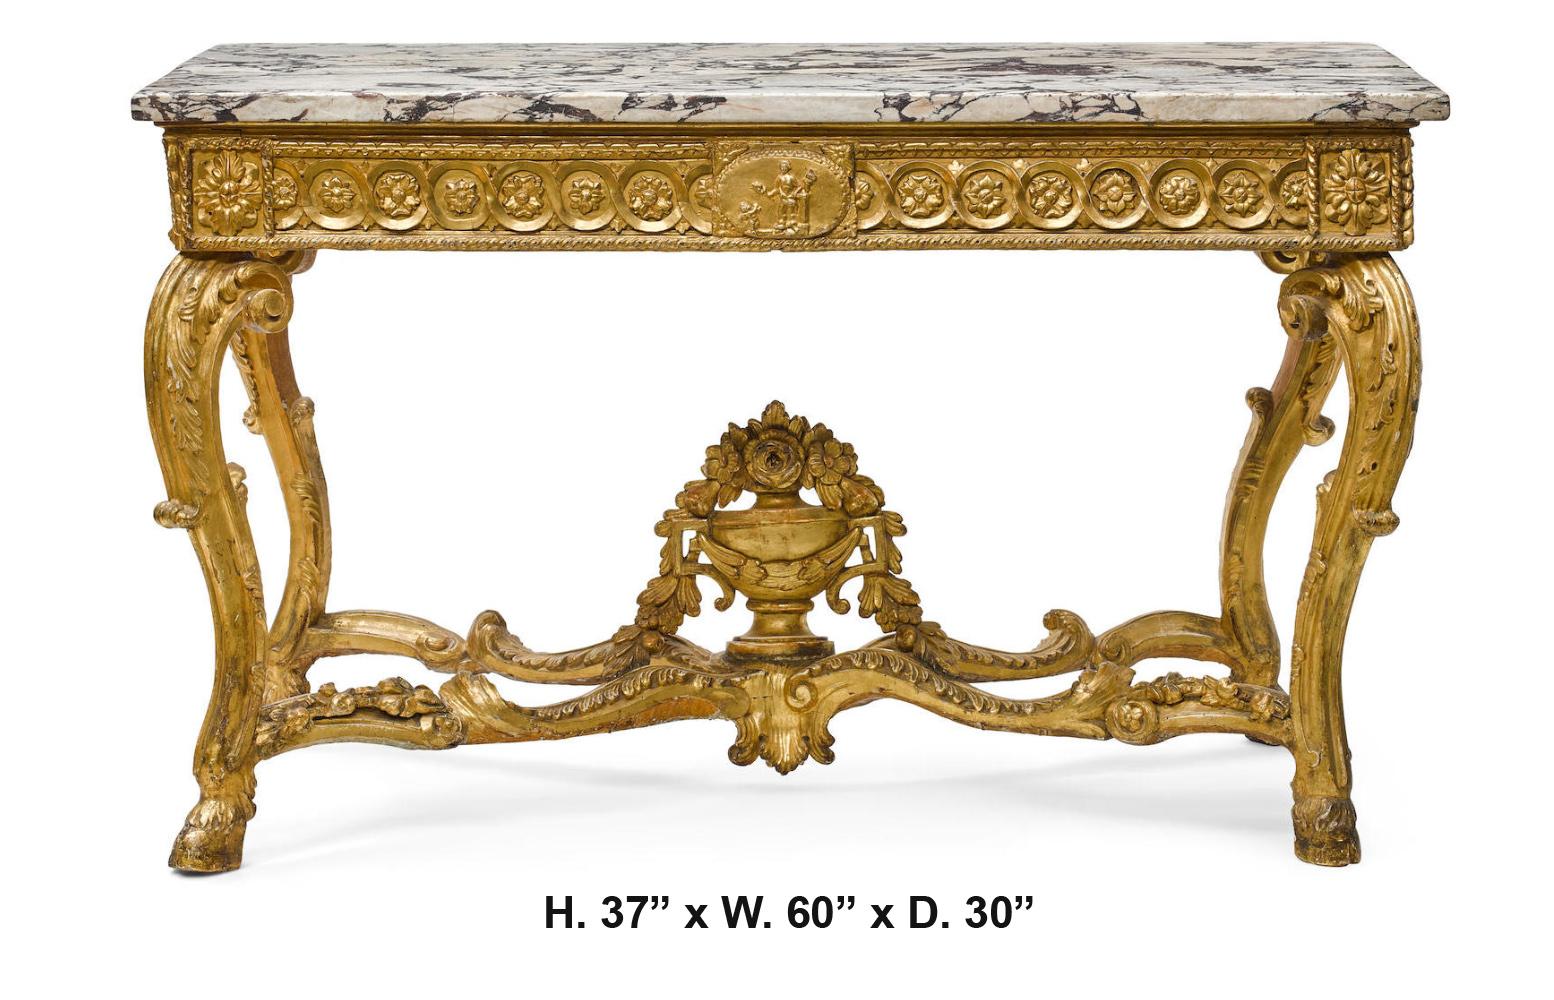 Hervorragende italienische Konsole im neoklassischen Stil aus geschnitztem Goldholz mit Marmorplatte und schöner Vergoldung,
ende des 18. bis Anfang des 19. Jahrhunderts.
Mit Sotheby's Auktionsaufkleber, der darauf hinweist, dass es ursprünglich